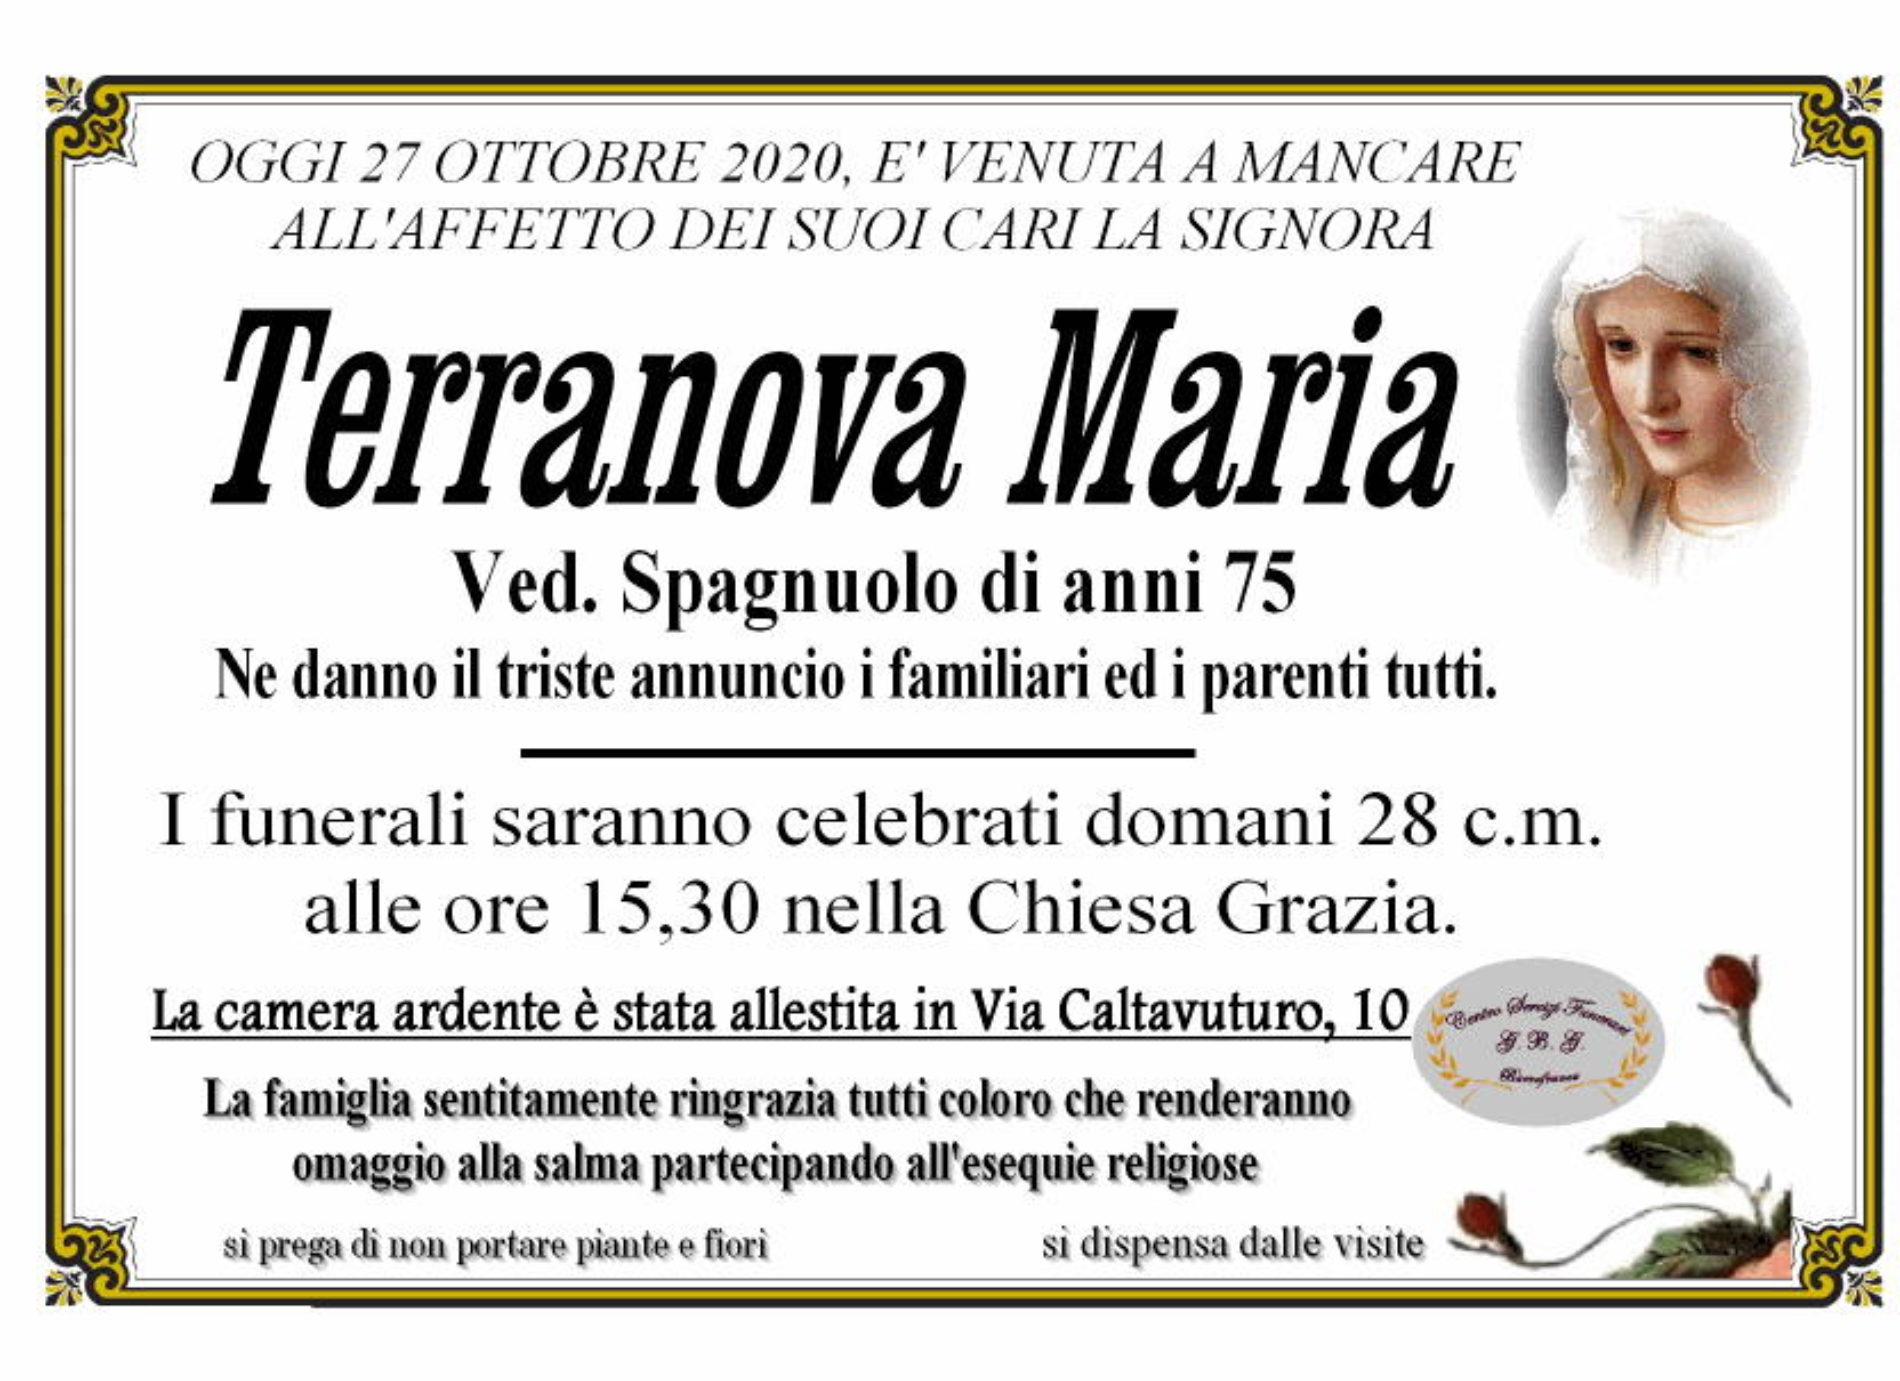 Annuncio servizi funerari G.B.G signora Terranova Maria ved. Spagnolo anni 75